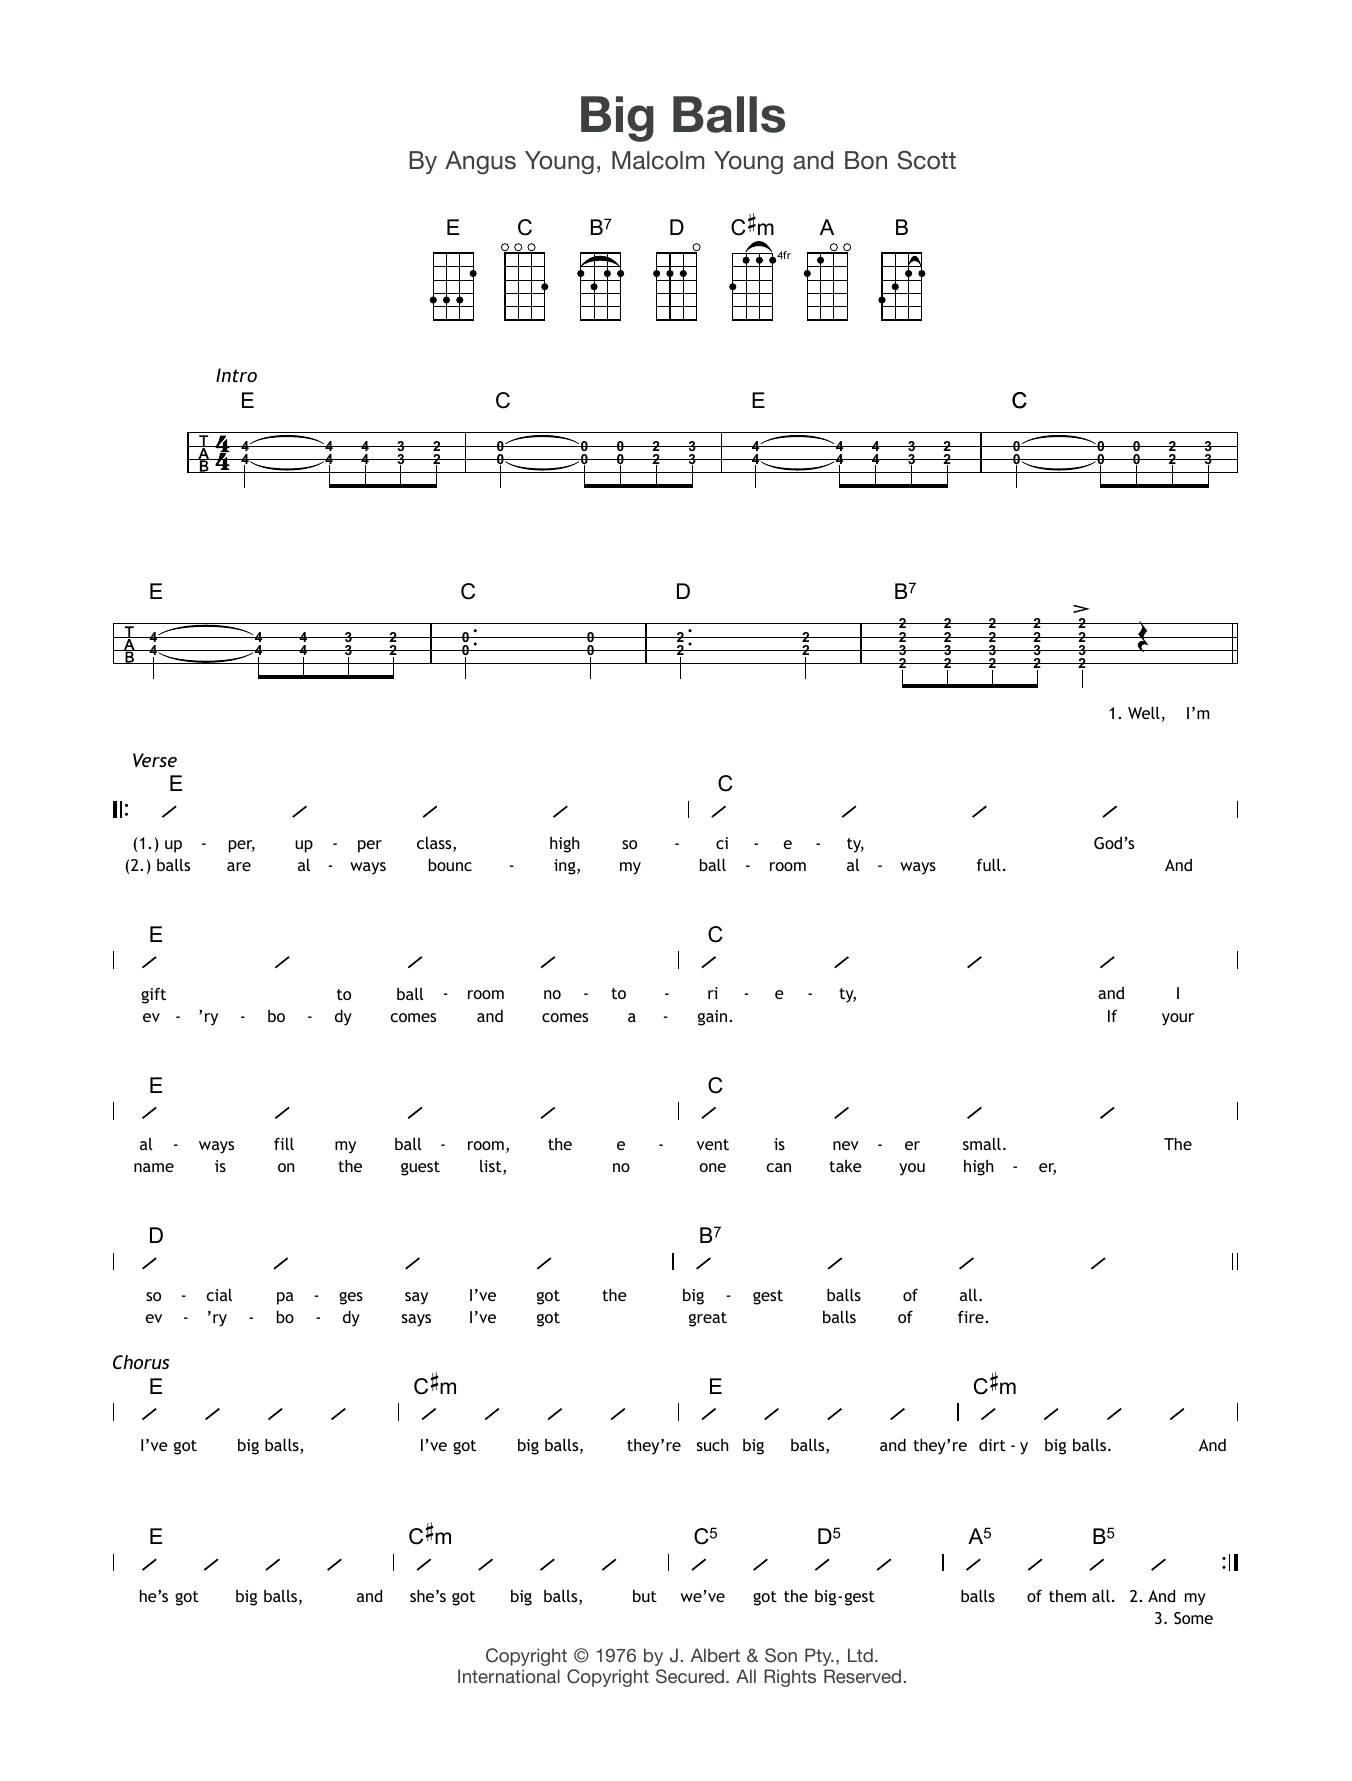 AC/DC Big Balls Sheet Music Notes & Chords for Lyrics & Chords - Download or Print PDF